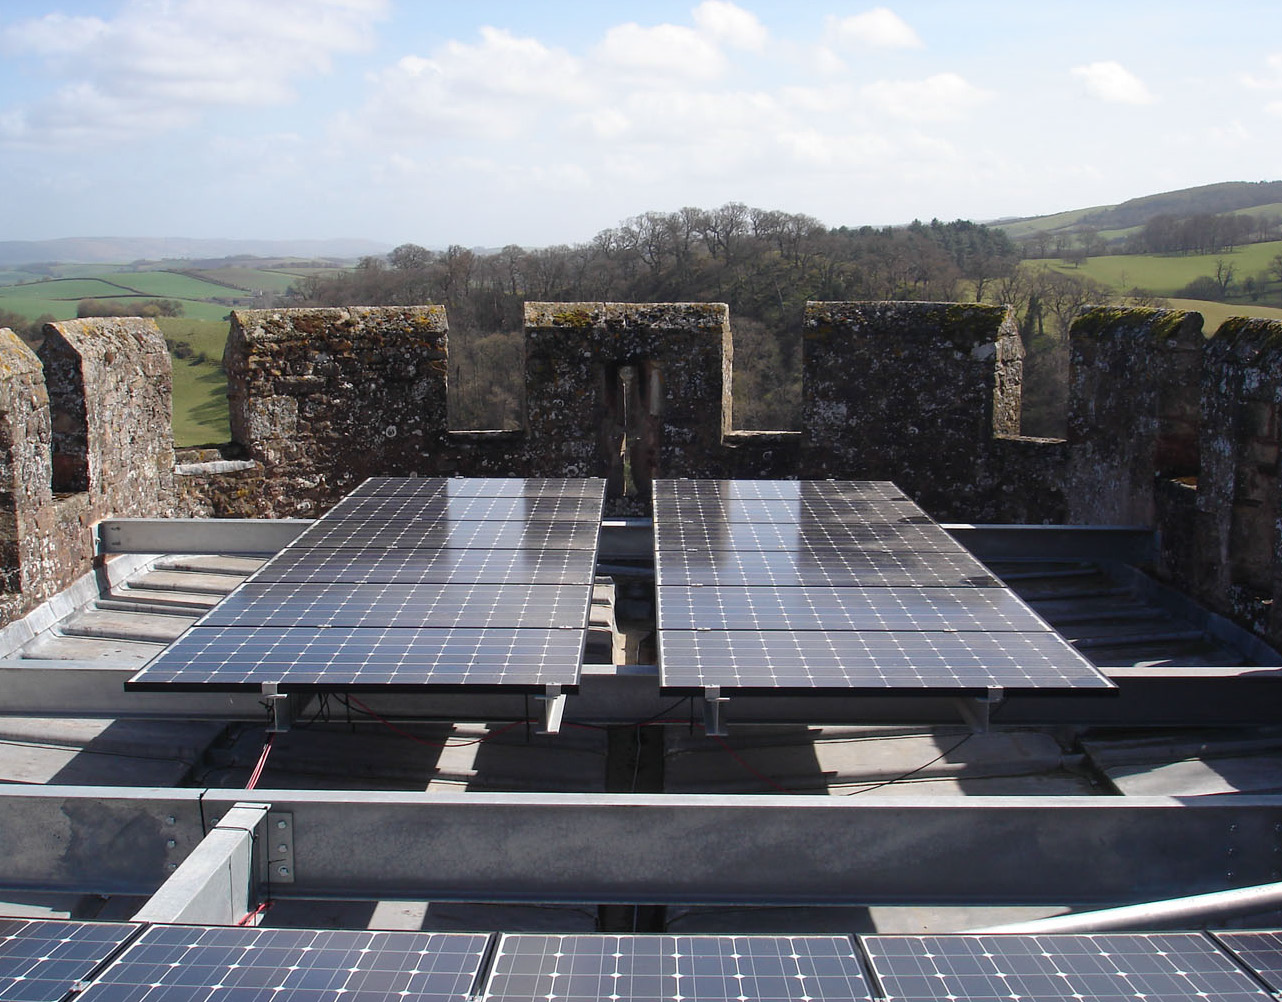 Obr. 27: Pohľad na detail strešnej roviny hradu Dunster, Anglicko s inštaláciou fotovotlických panelov v horizontálnej rovine tak, aby neboli viditeľné z celkových pohľadov na objekt s najvyšším stupňom ochrany. 